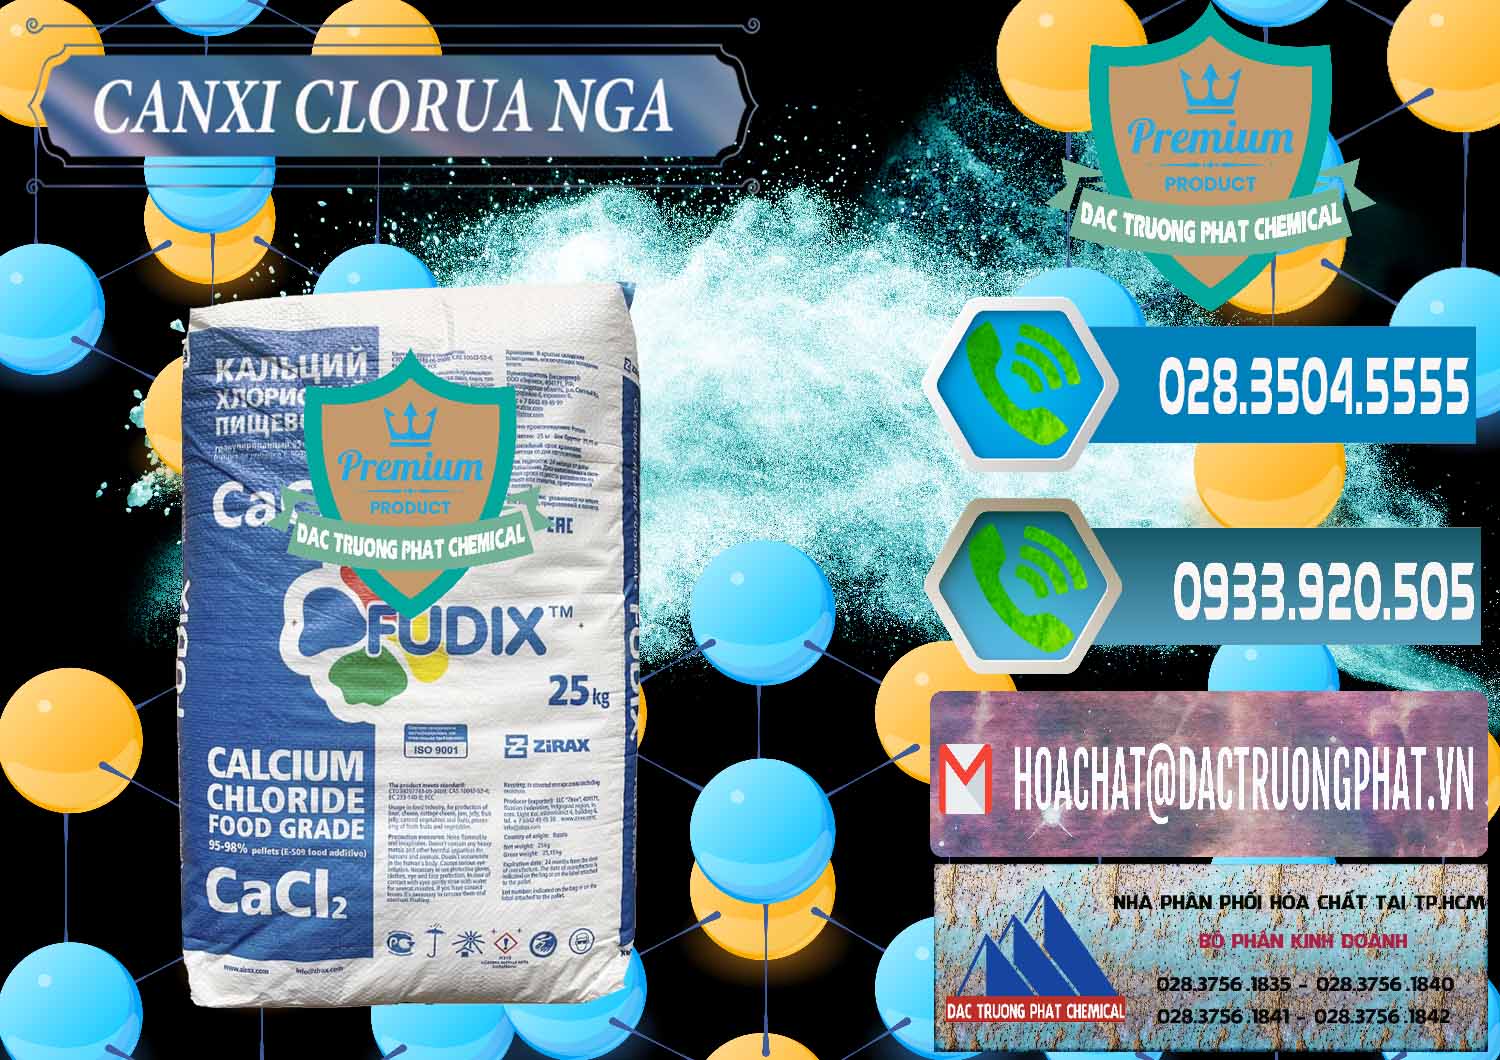 Đơn vị bán - cung ứng CaCl2 – Canxi Clorua Nga Russia - 0430 - Công ty chuyên cung cấp ( kinh doanh ) hóa chất tại TP.HCM - congtyhoachat.net